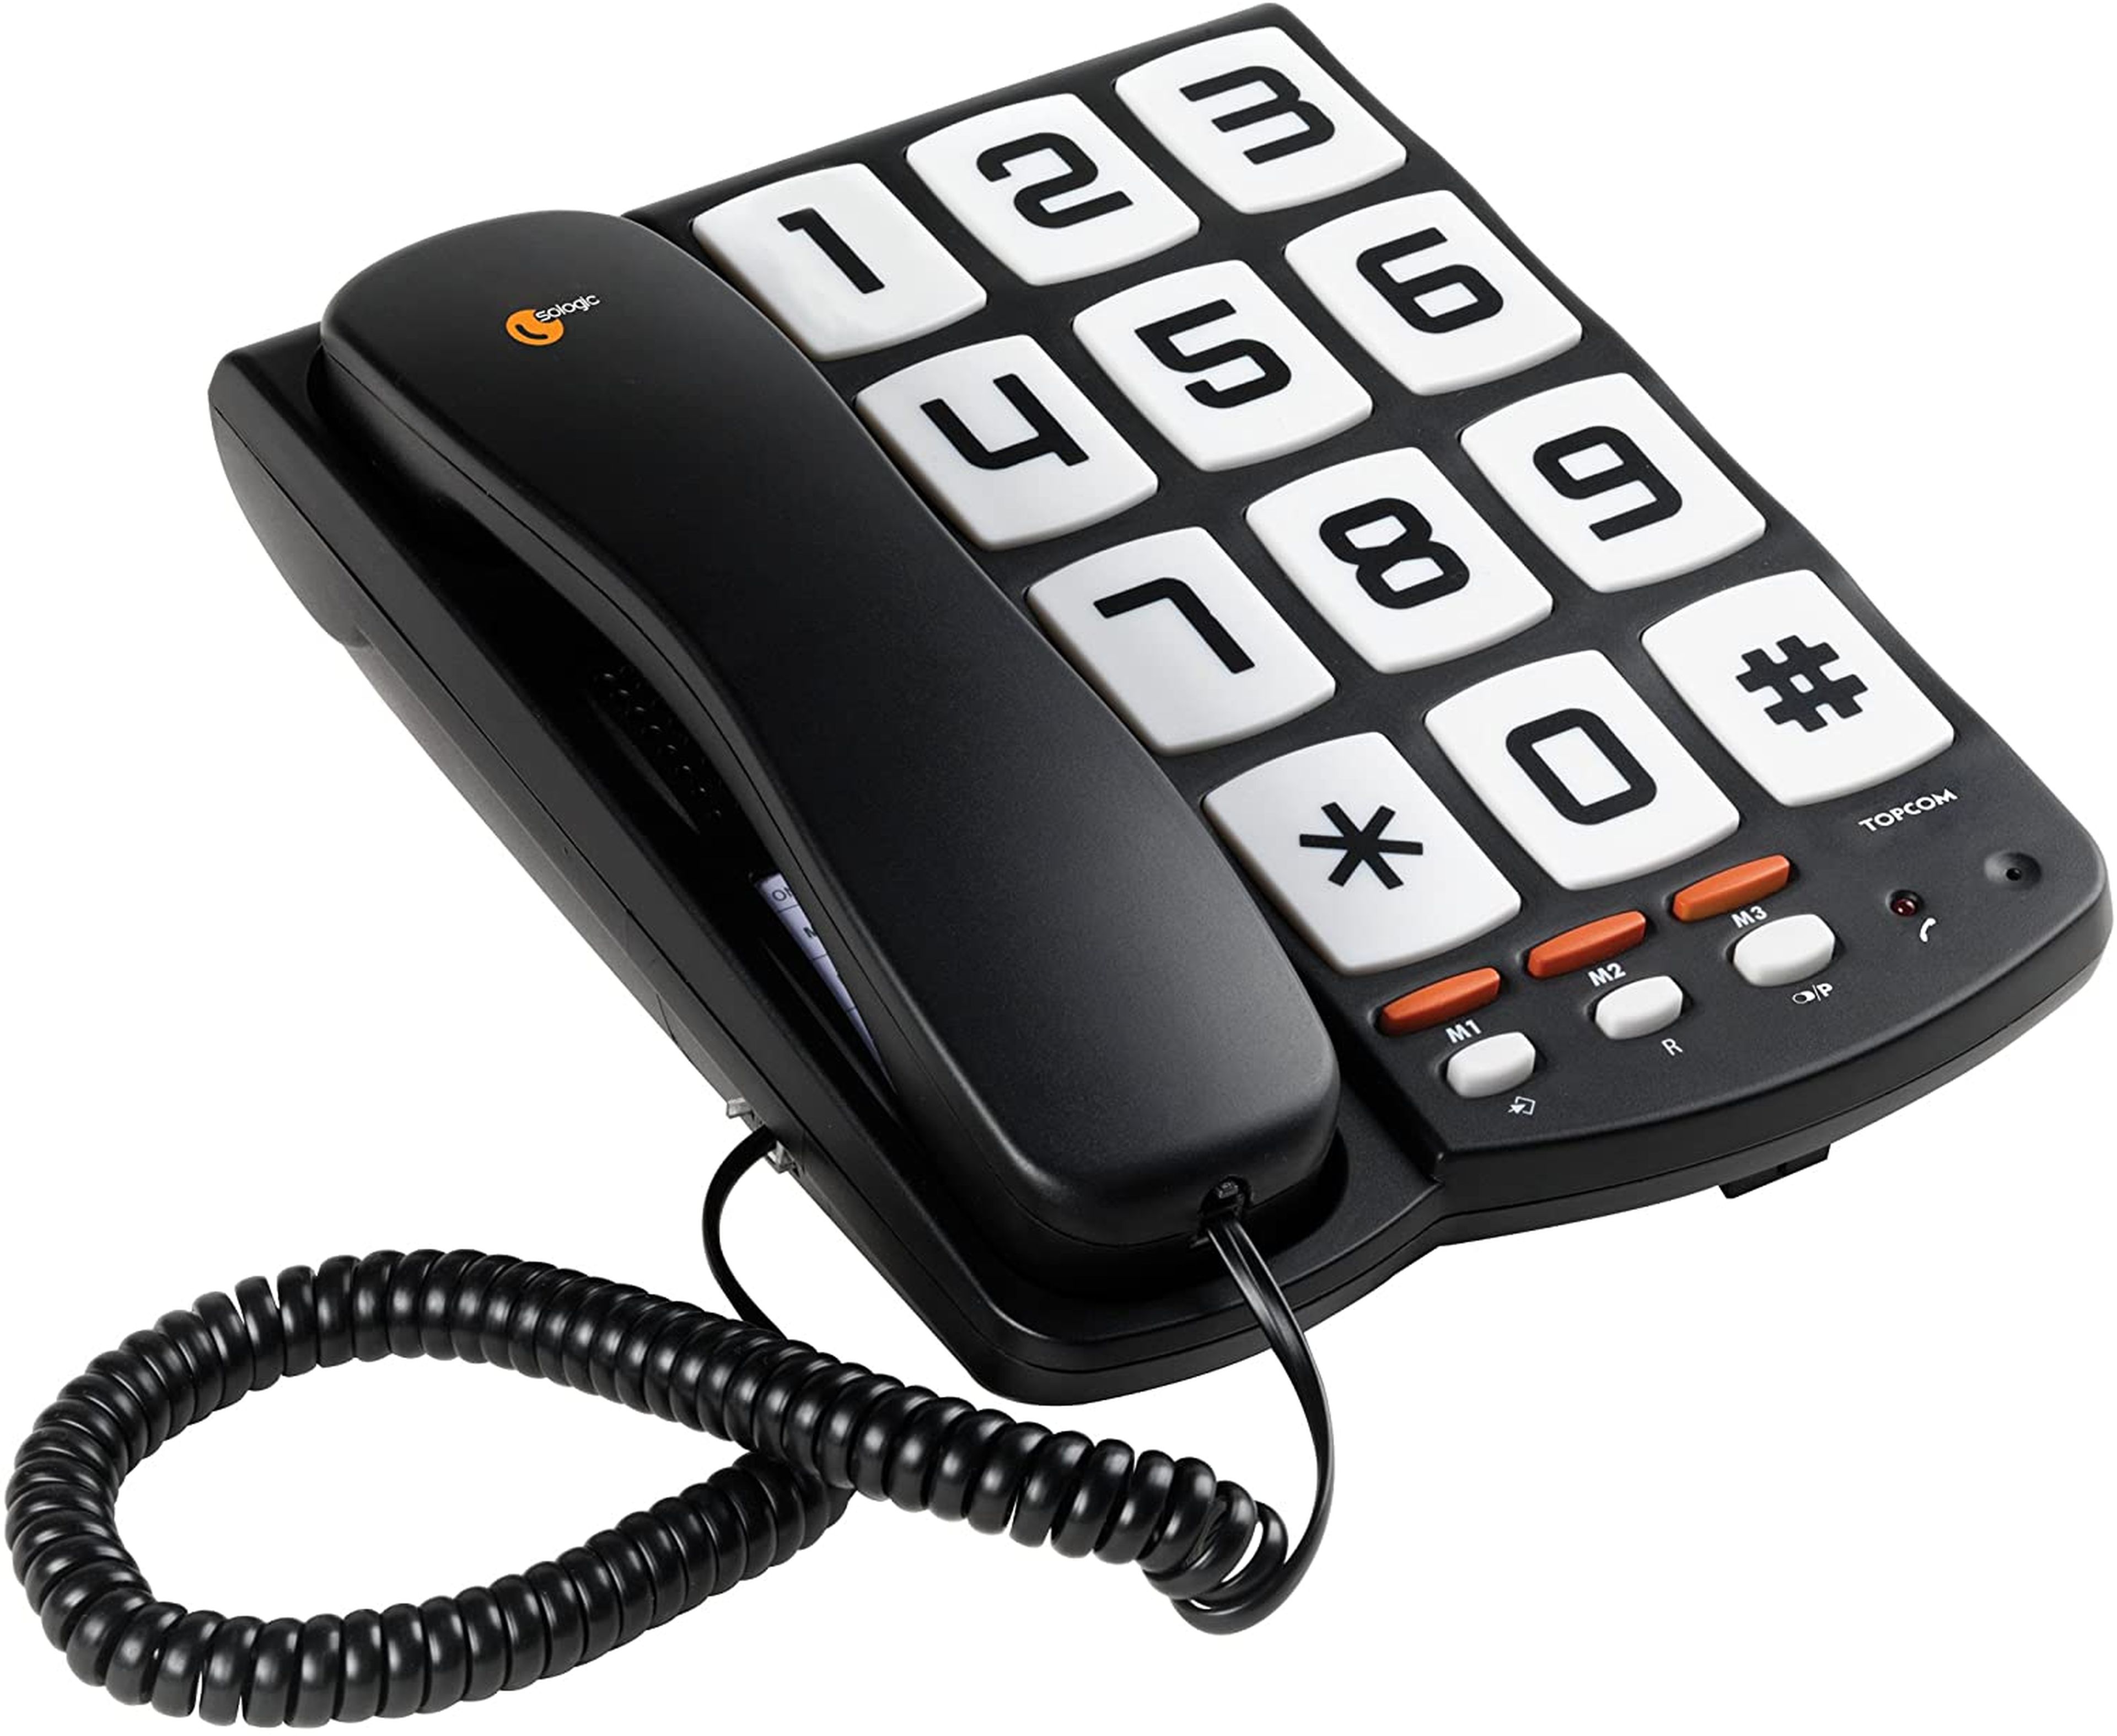 Домашний телефон с сим. Телефон Topcom 150. Телефон Topcom Allure 200. Телефонный аппарат кнопочный. Телефон кнопочный стационарный.